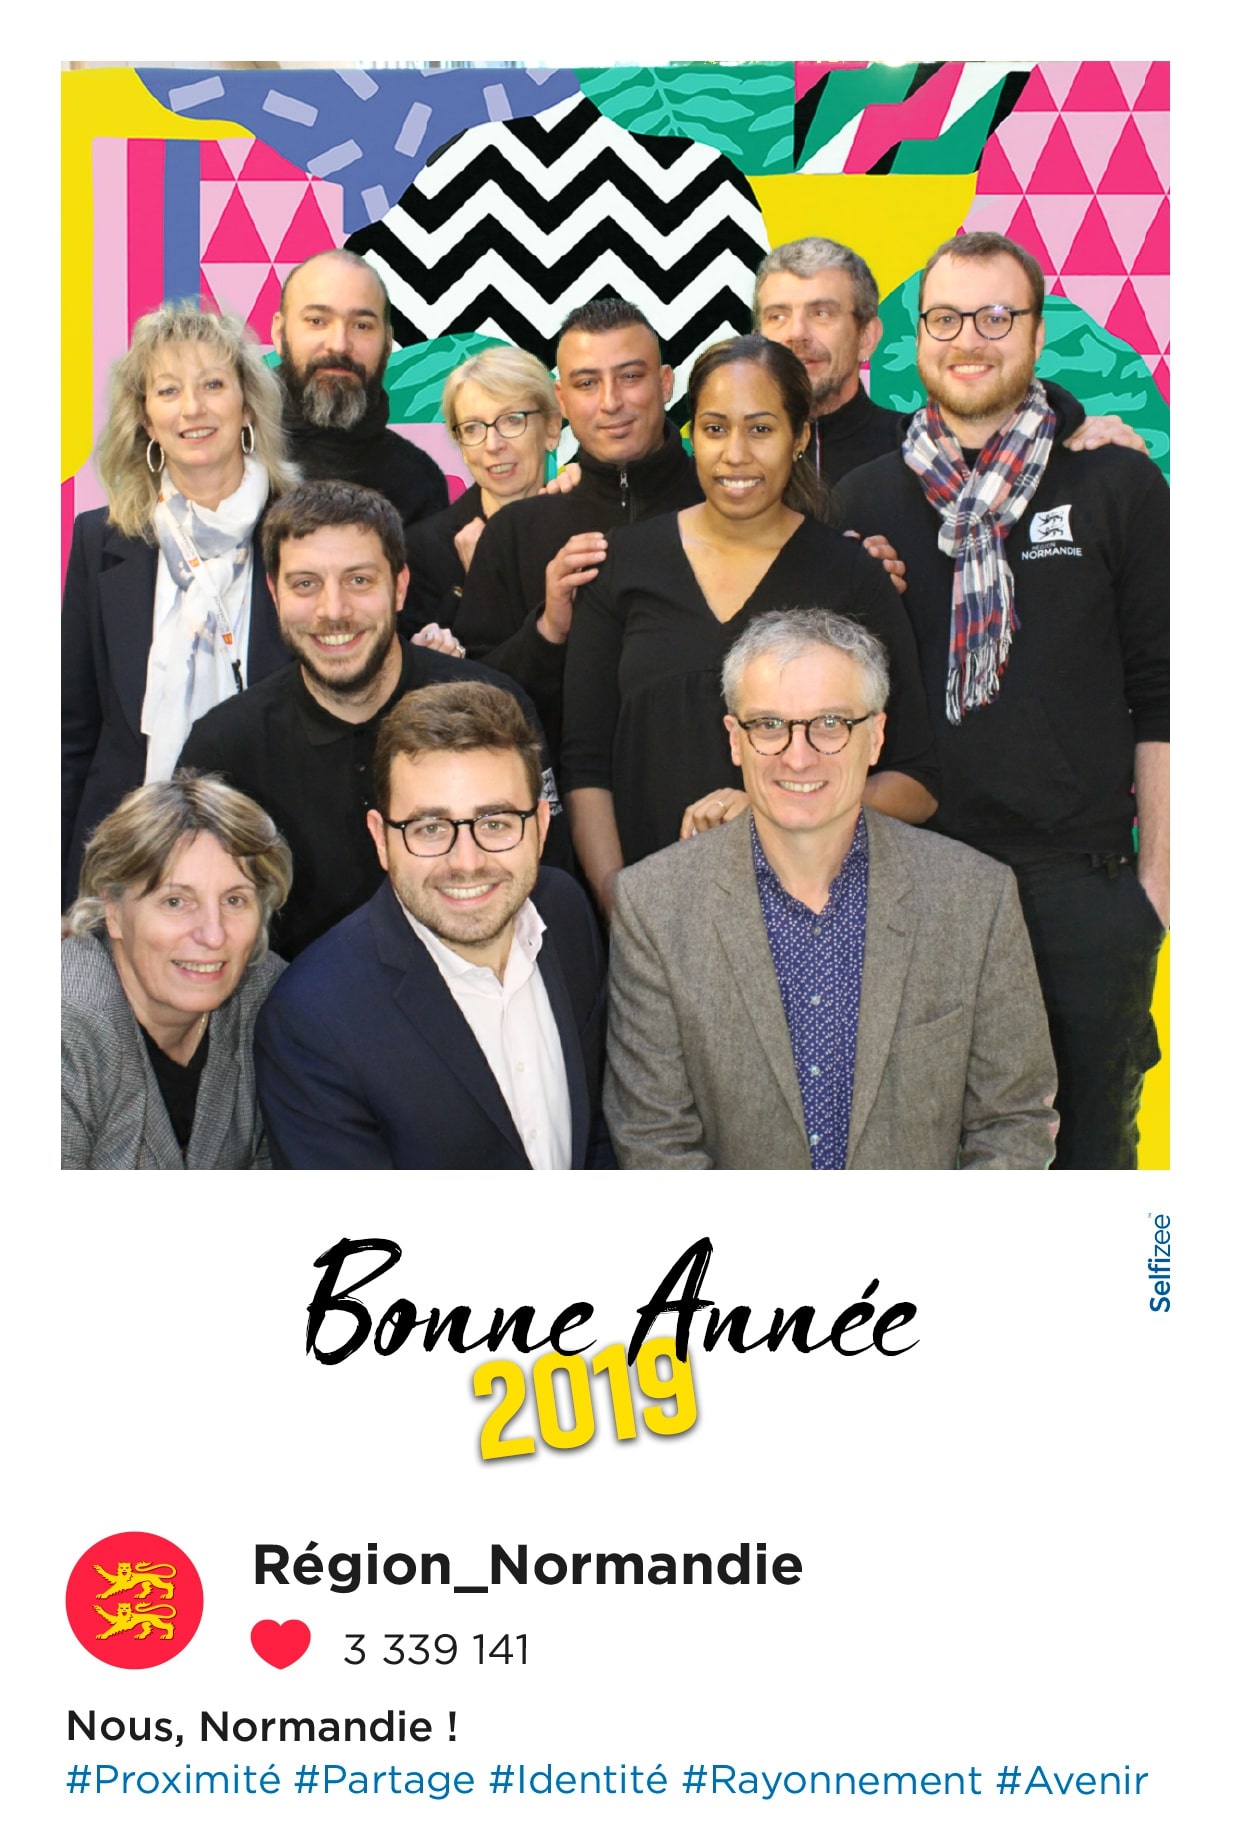 Photos personnalisées et selfie box connectée avec animation fond vert pour fête nouvel an au conseil régional de Normandie à Caen